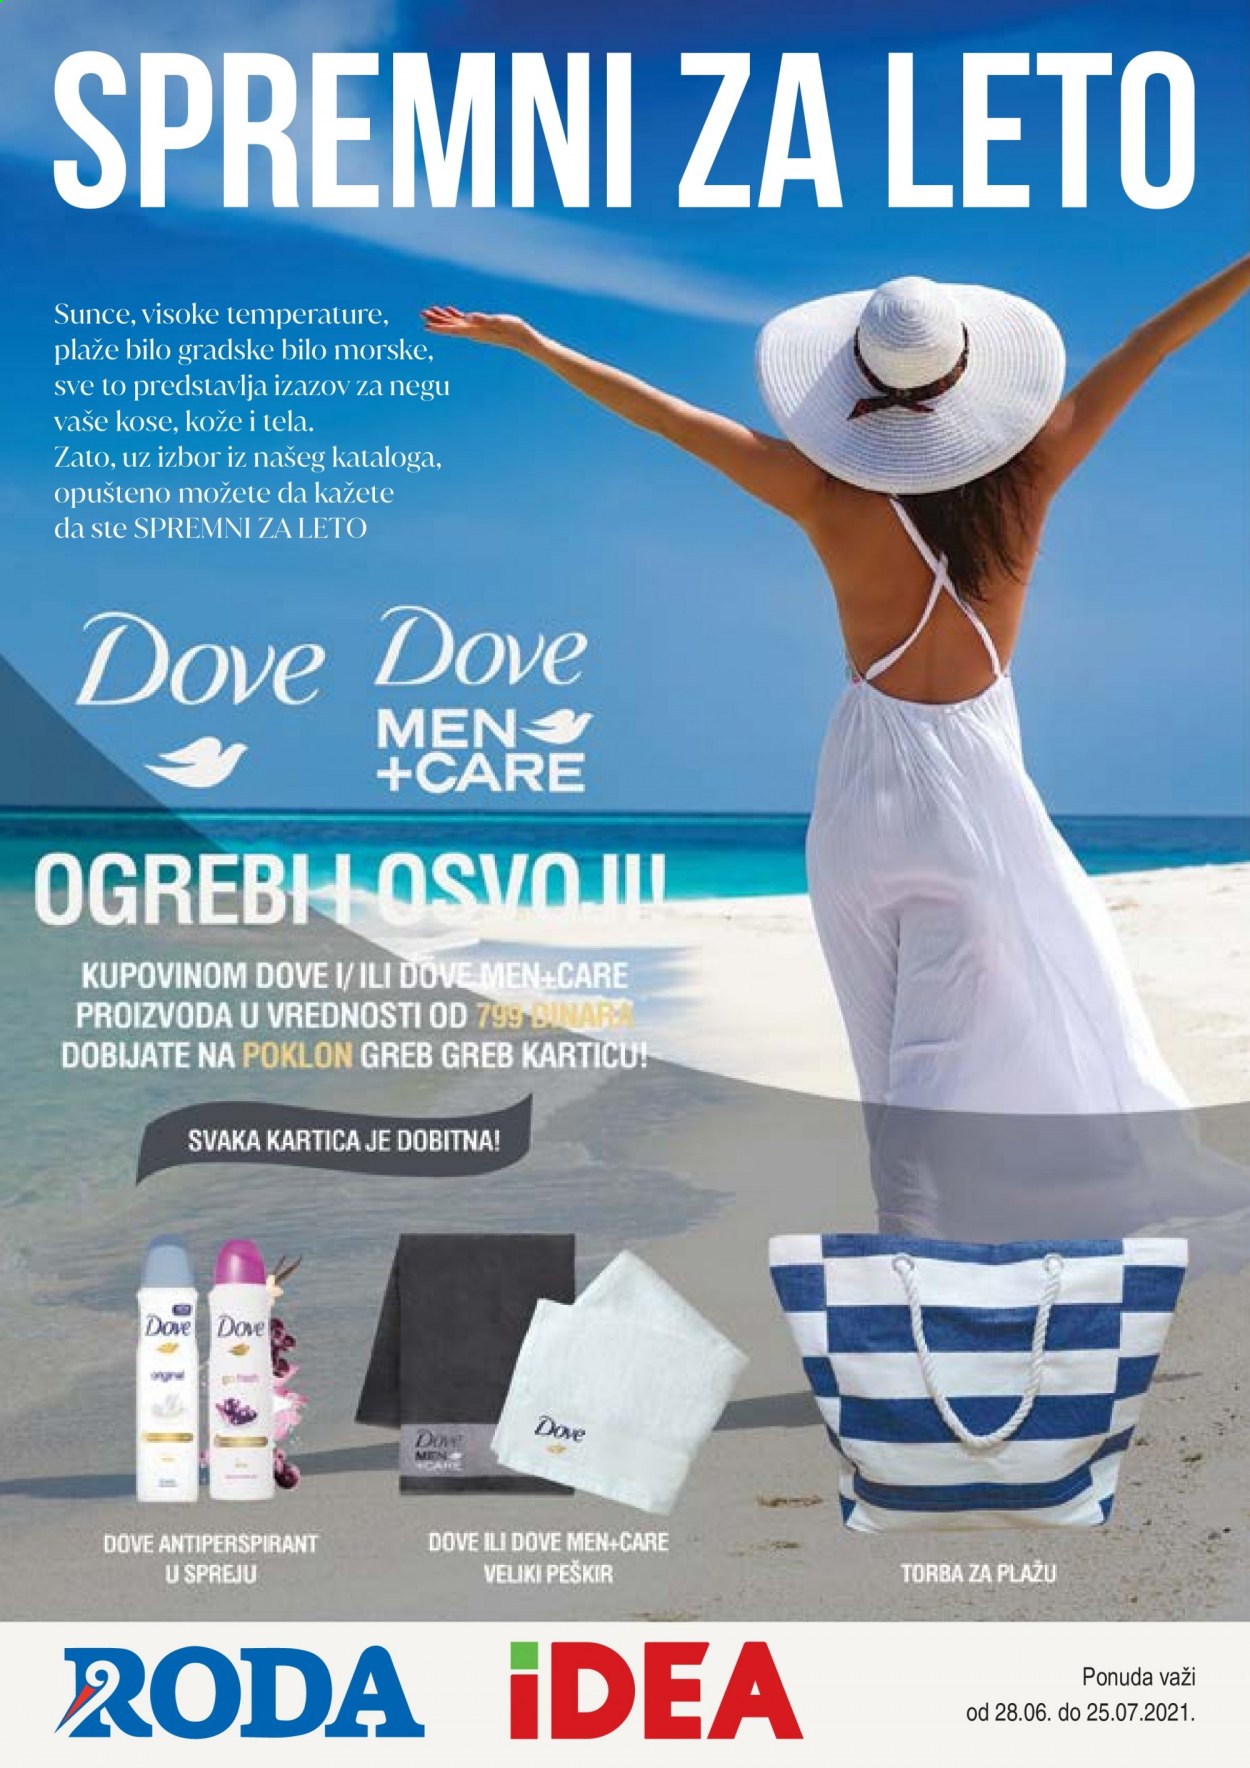 thumbnail - Roda katalog - 28.06.2021 - 25.07.2021 - Proizvodi na akciji - Dove, dezodorans, peškir, torba, torba za plažu. Stranica 1.